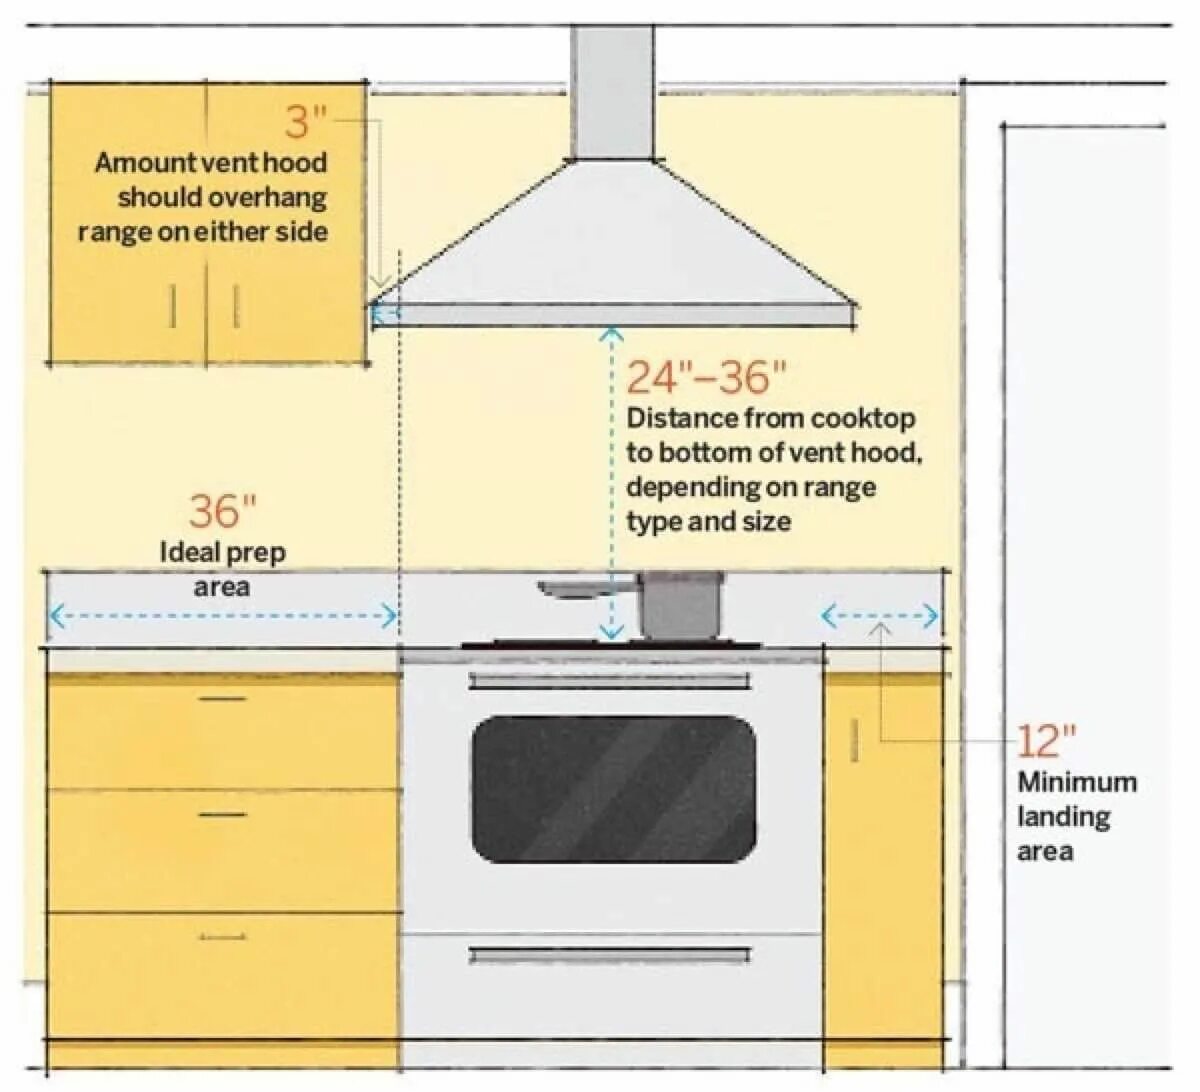 Вытяжки закон. Какое расстояние от газовой плиты до вытяжки. Расстояние между газовой плитой и вытяжкой на кухне нормы. Высота установки вытяжки на кухне для газовой плиты. Какое расстояние должно быть от газовой плиты до вытяжки.